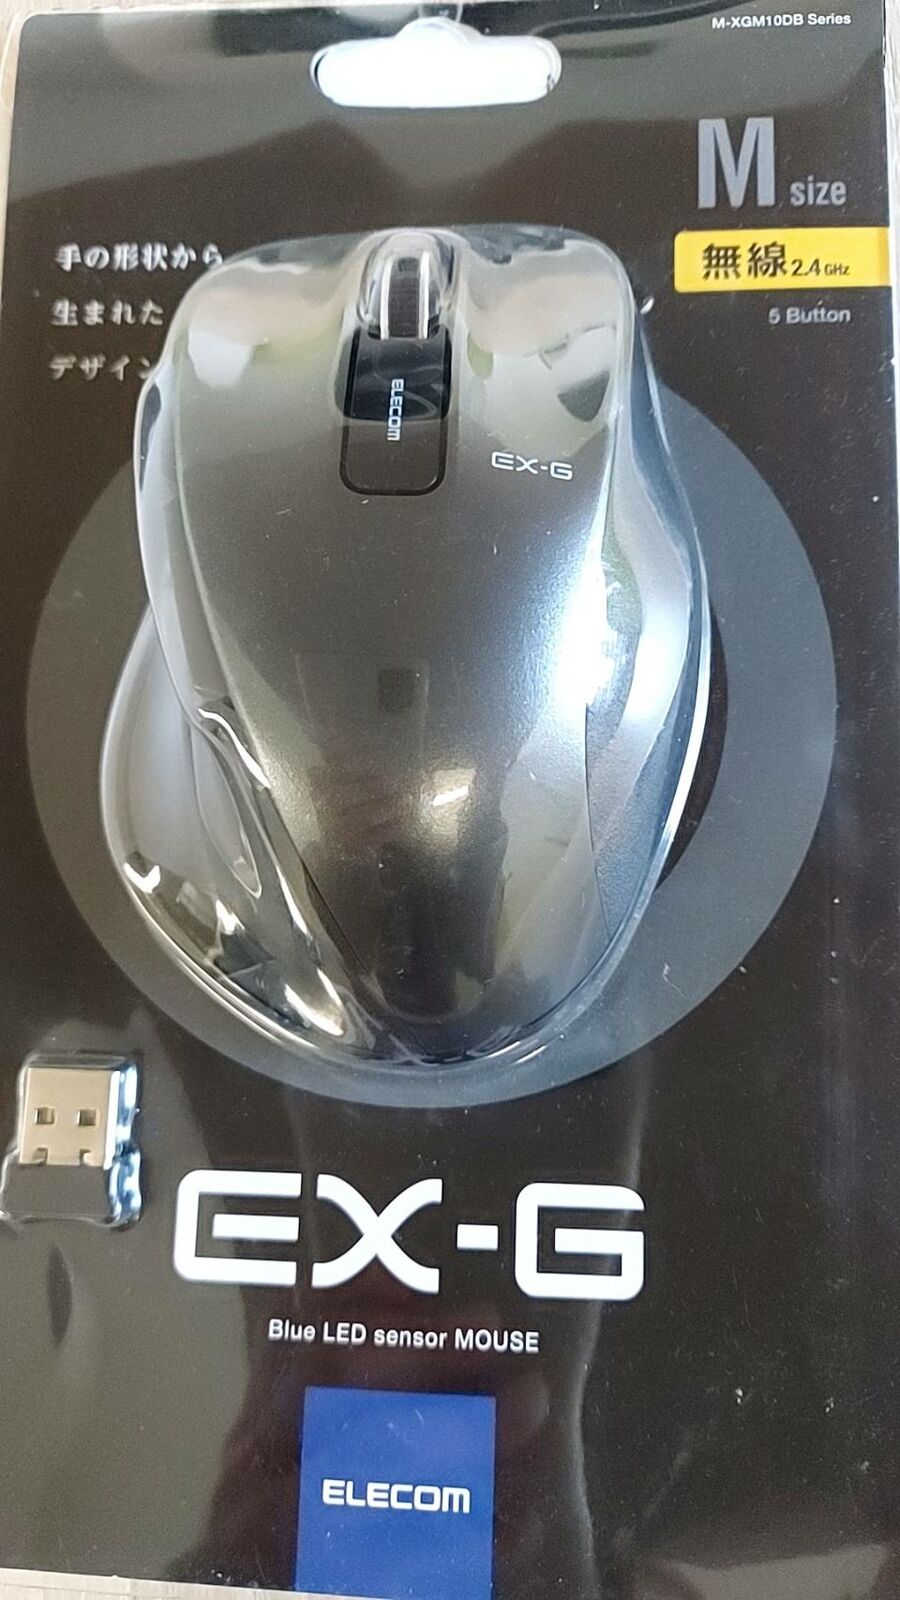 ELECOM Mouse Wireless M Size Sale item Button Metallic Gun 5 5% OFF M-XGM10DBBK